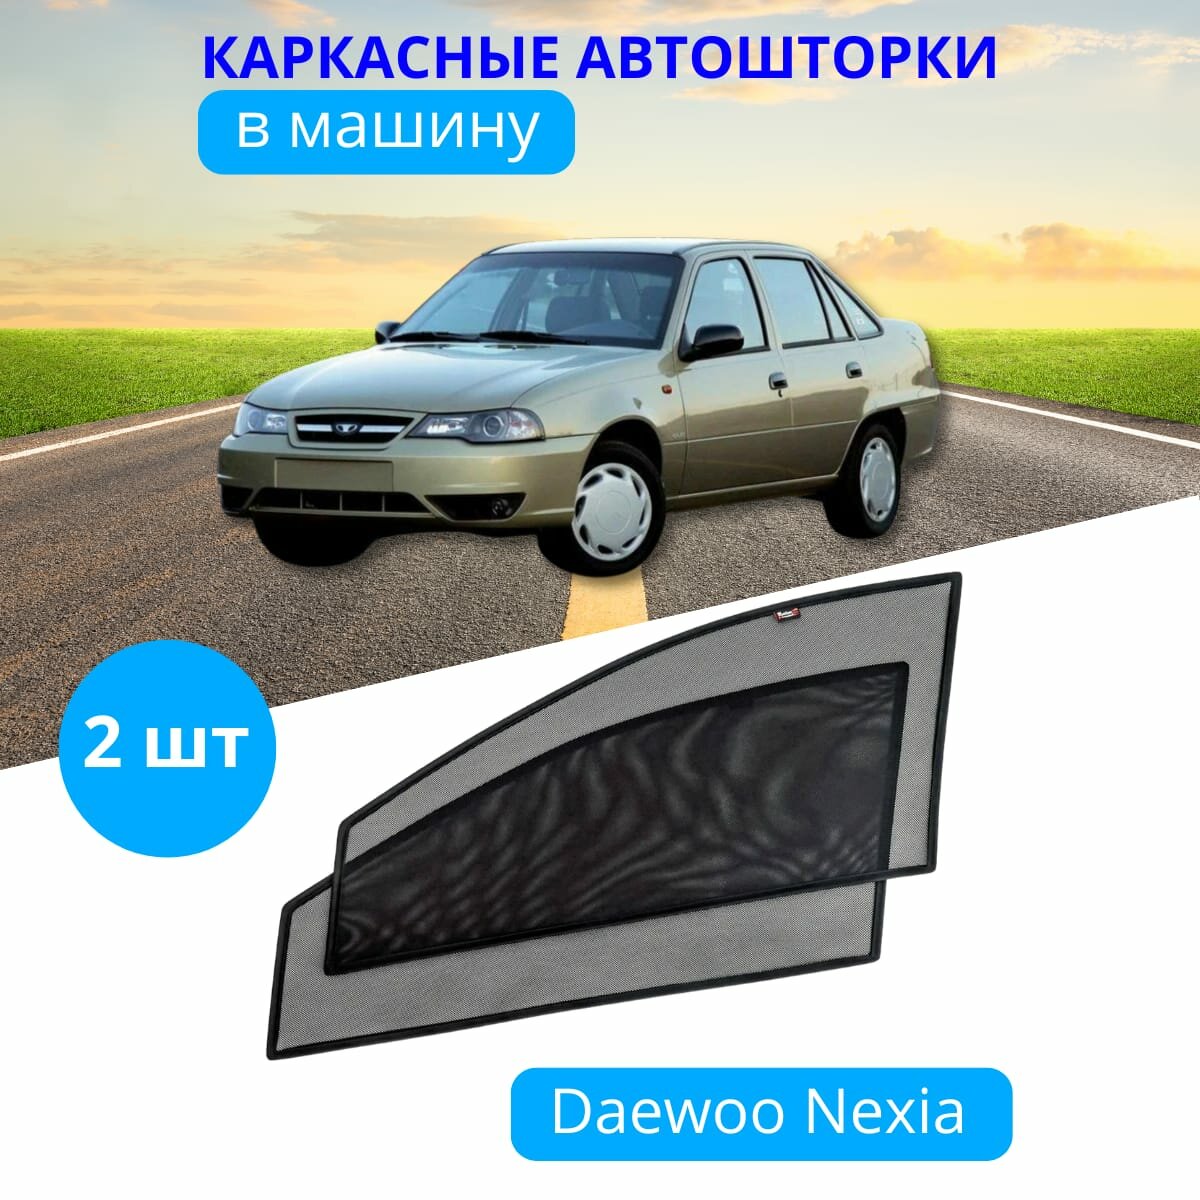 Автошторки каркасные на DAEWOO Nexia, на передние двери на встроенных магнитах, с затемнением 80-85% от автоателье "Тачкин Гардероб".